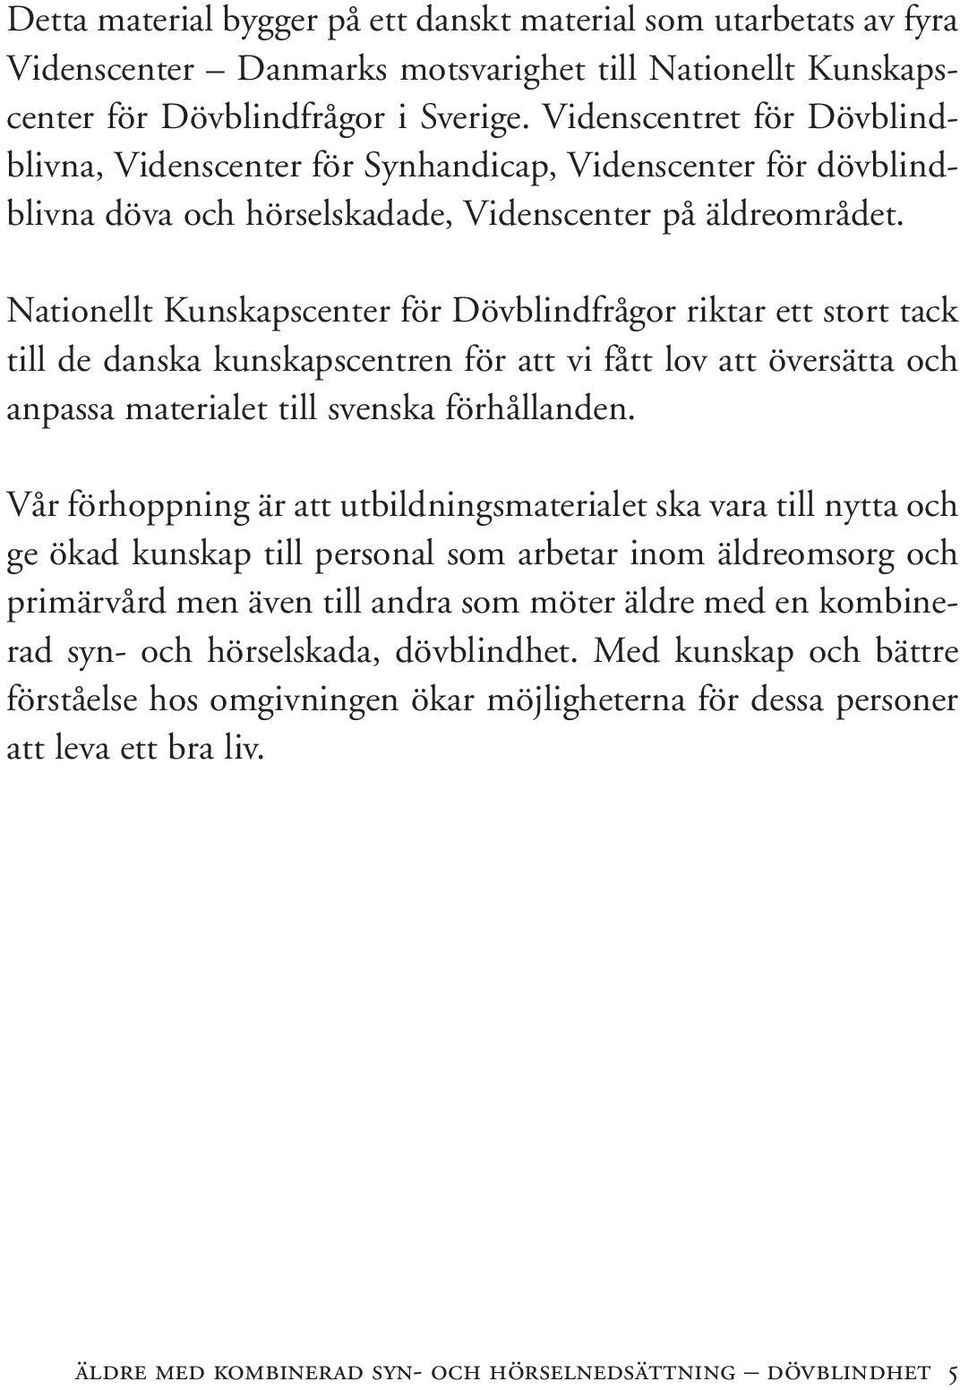 Nationellt Kunskapscenter för Dövblindfrågor riktar ett stort tack till de danska kunskapscentren för att vi fått lov att översätta och anpassa materialet till svenska förhållanden.